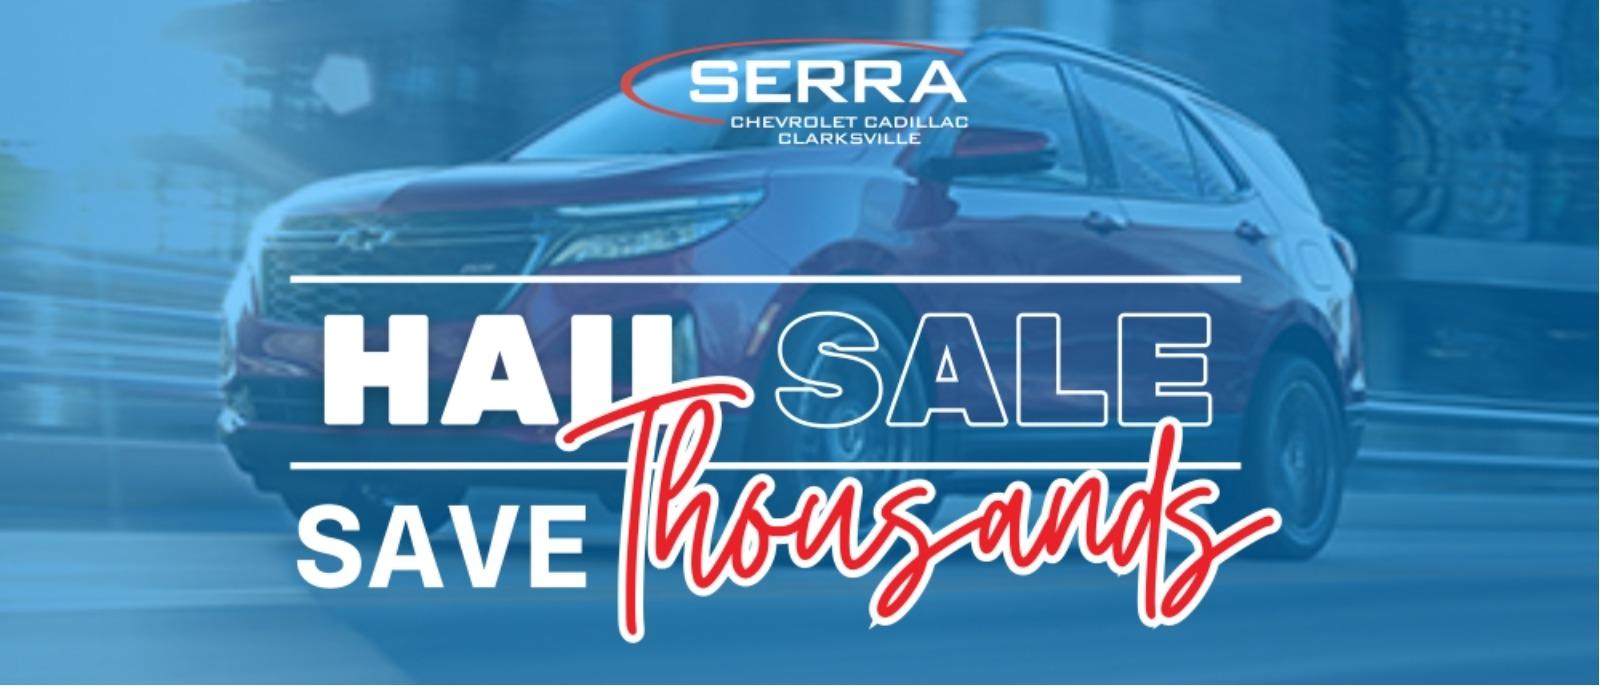 Hail Sale at Serra Chevrolet Clarksville